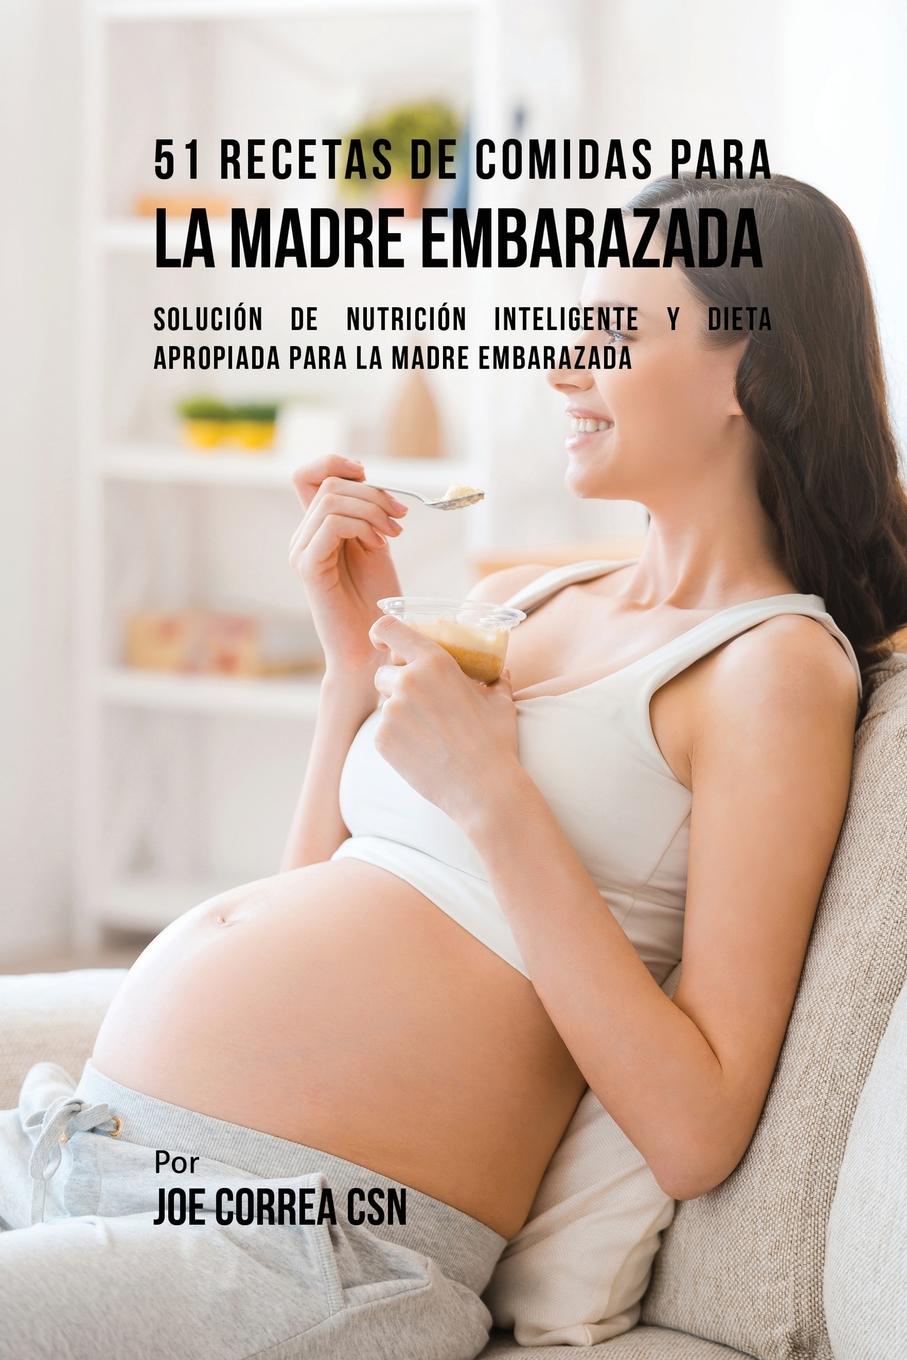 Joe Correa 51 Recetas De Comidas Para La Madre Embarazada. Solucion de Nutricion Inteligente y Dieta Apropiada Para La Madre Embarazada